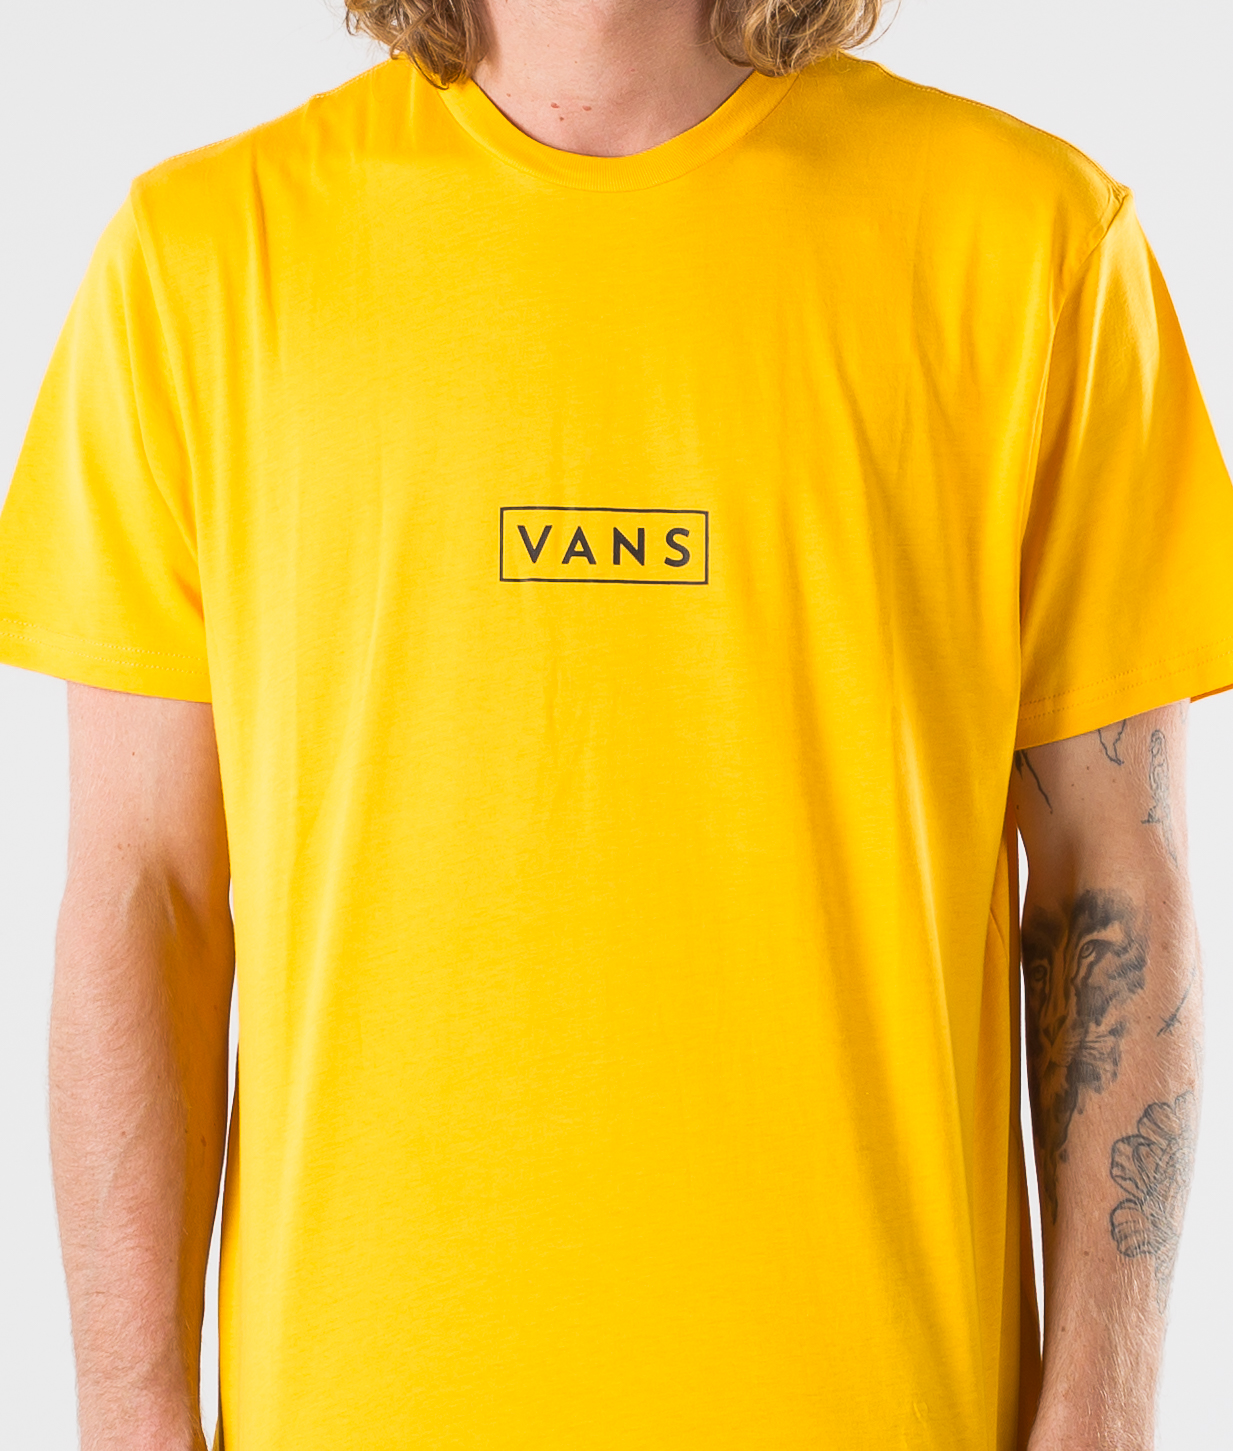 gold vans shirt